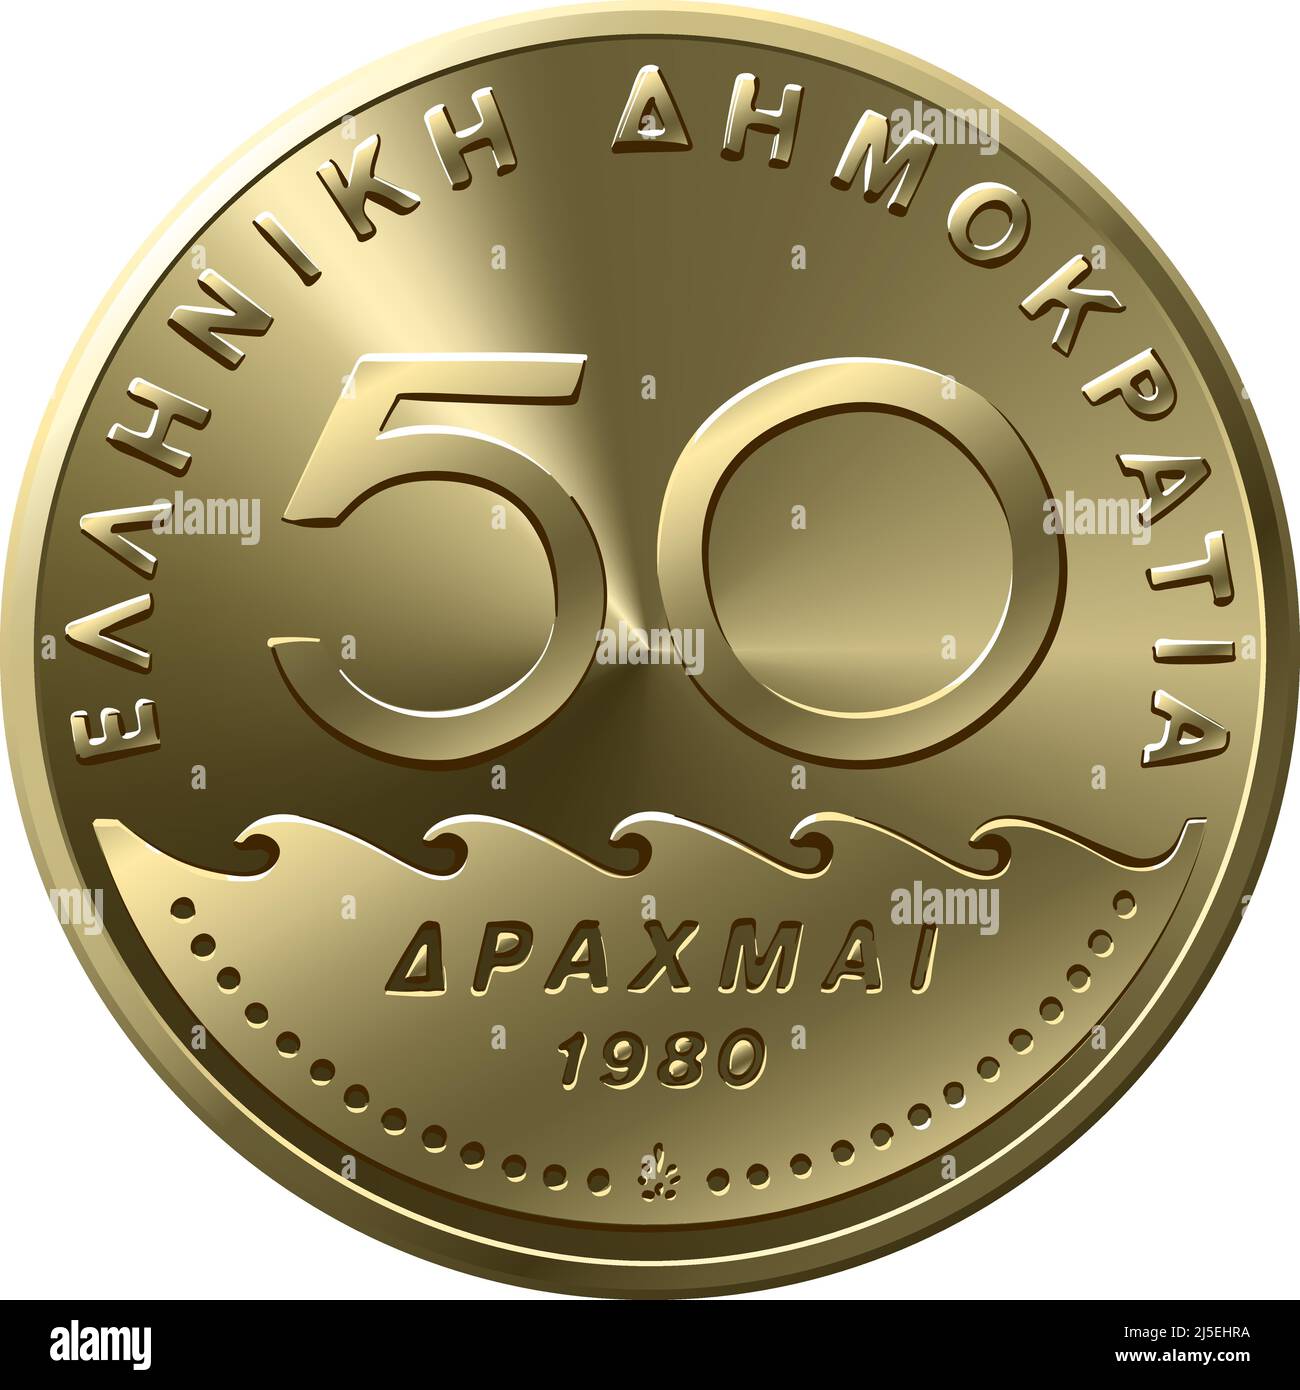 vektor-Vorderseite des griechischen Geldes, 50 Drachmen-Münze mit Solon-Profil Stock Vektor